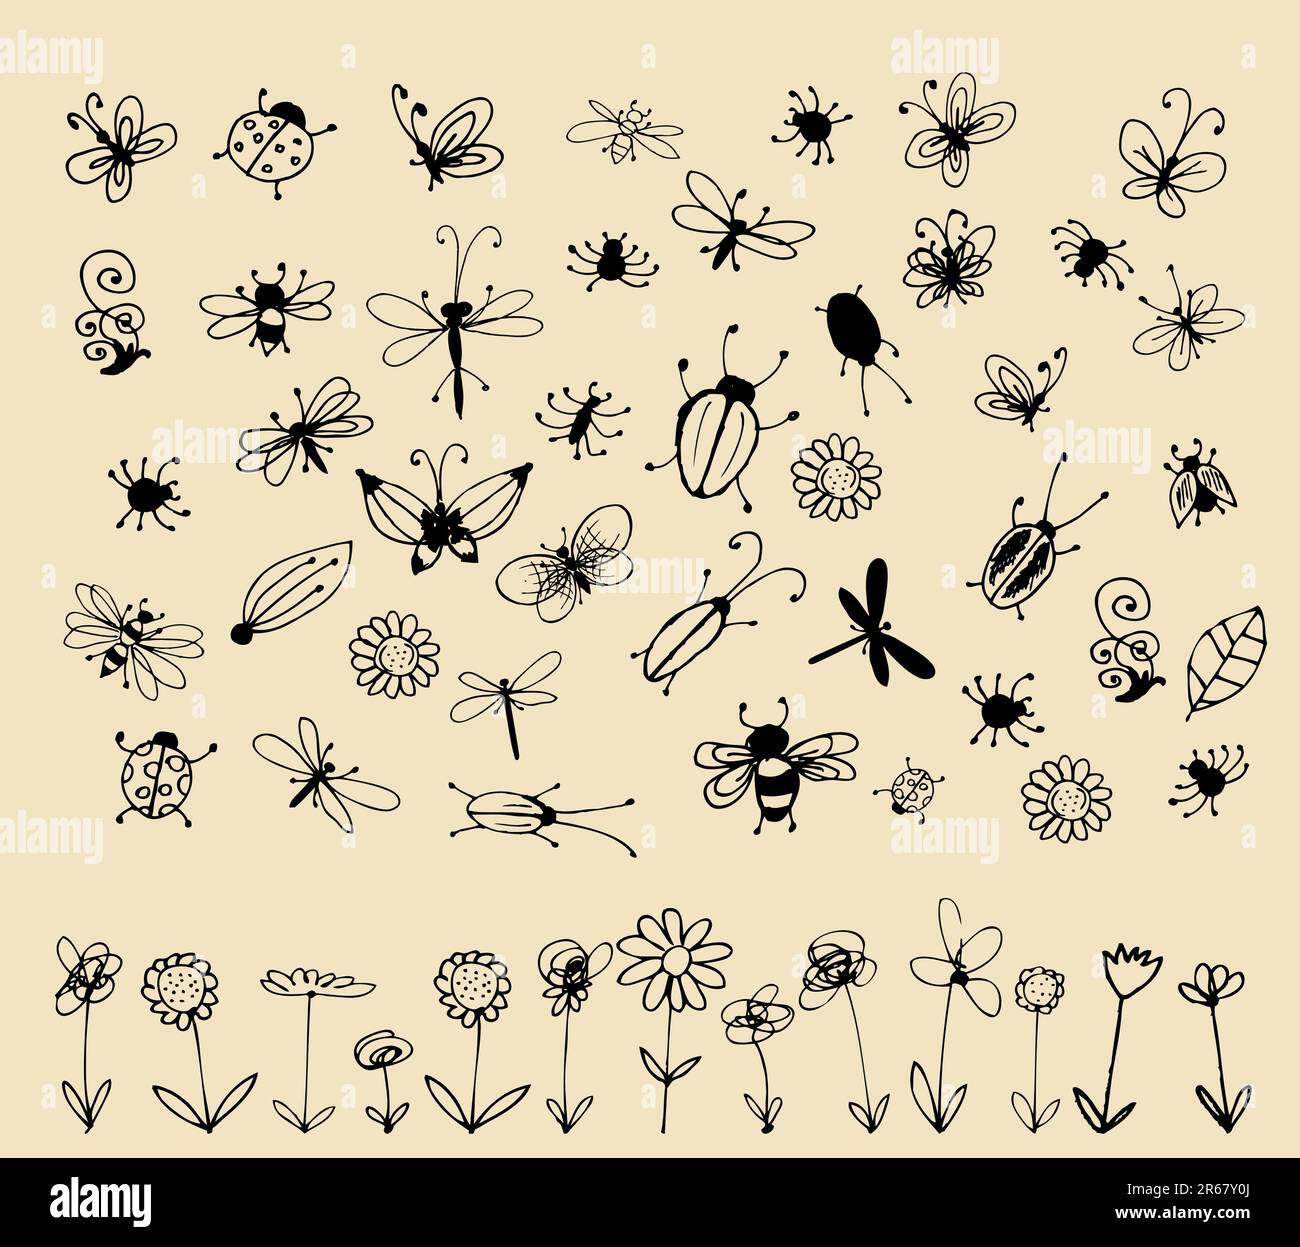 Croquis d'insectes pour collection votre conception Illustration de Vecteur